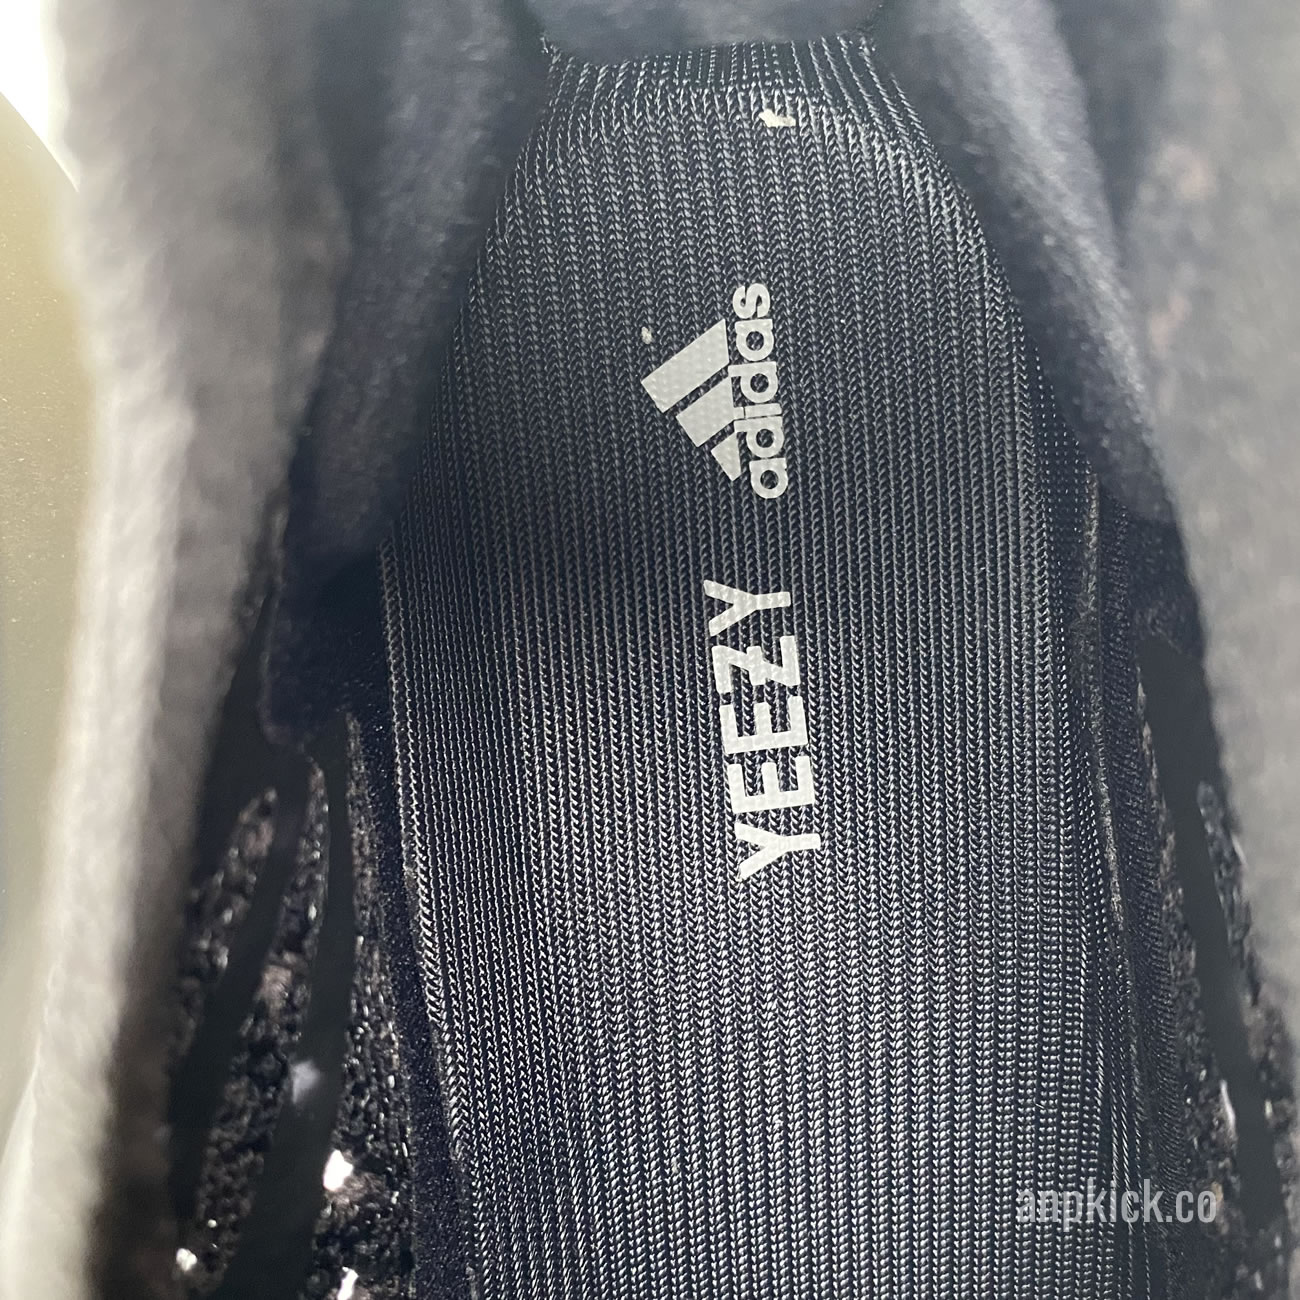 Adidas Yeezy Boost 380 Onyx Fz1270 Release Date (6) - newkick.org